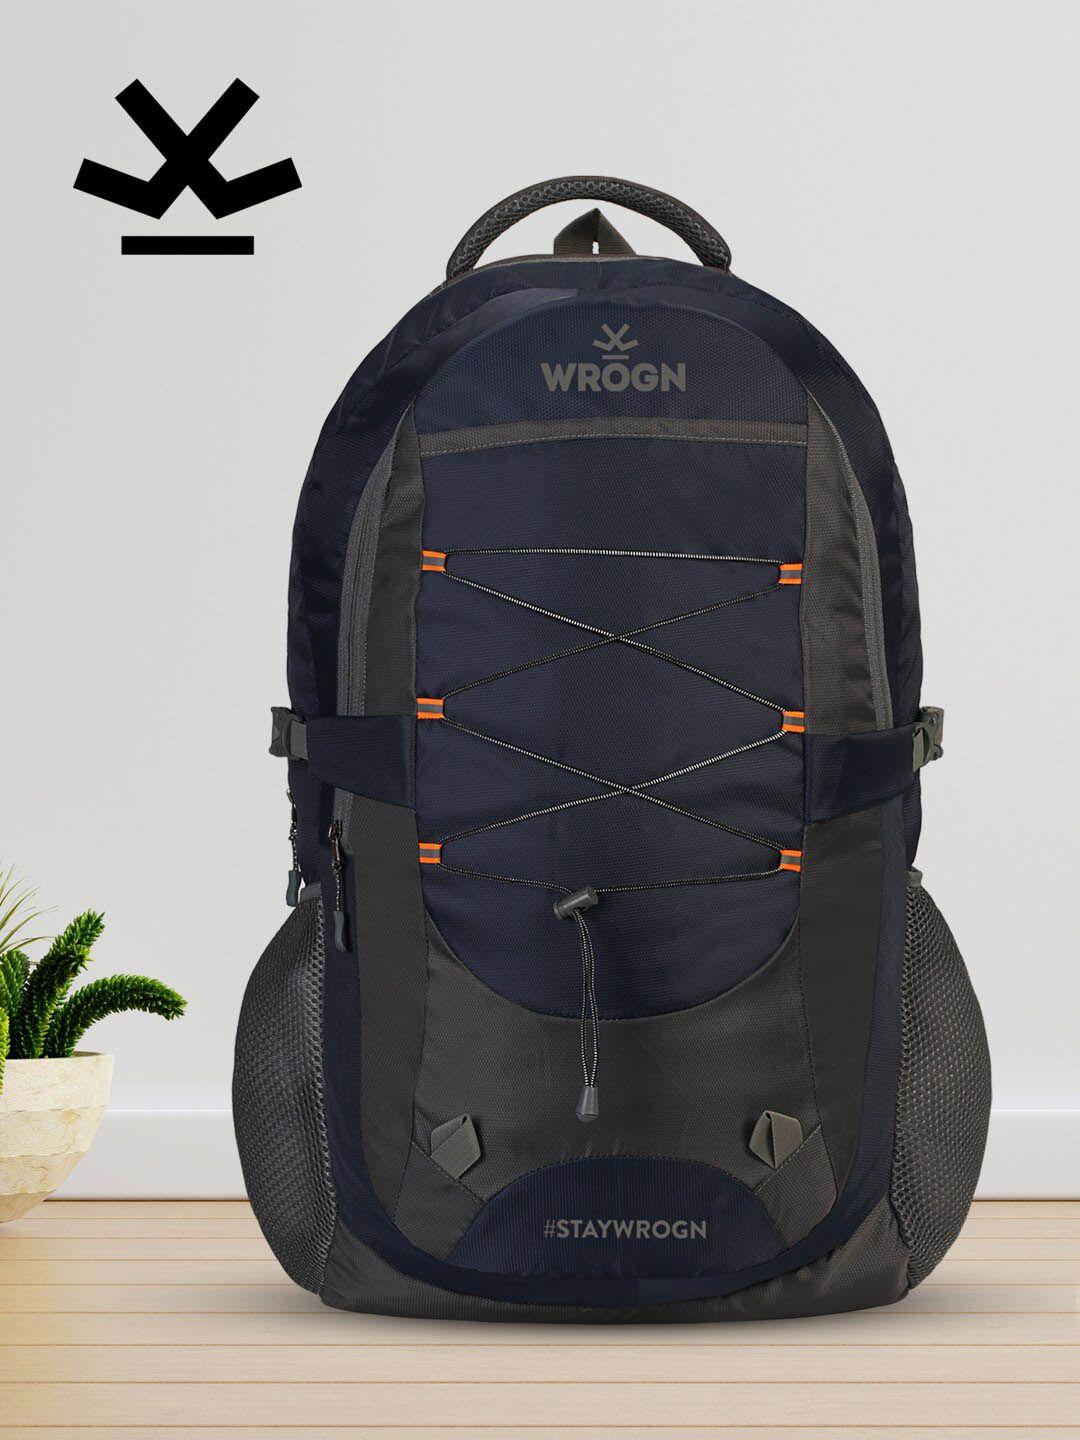 wrogn unisex navy blue & grey brand logo backpack